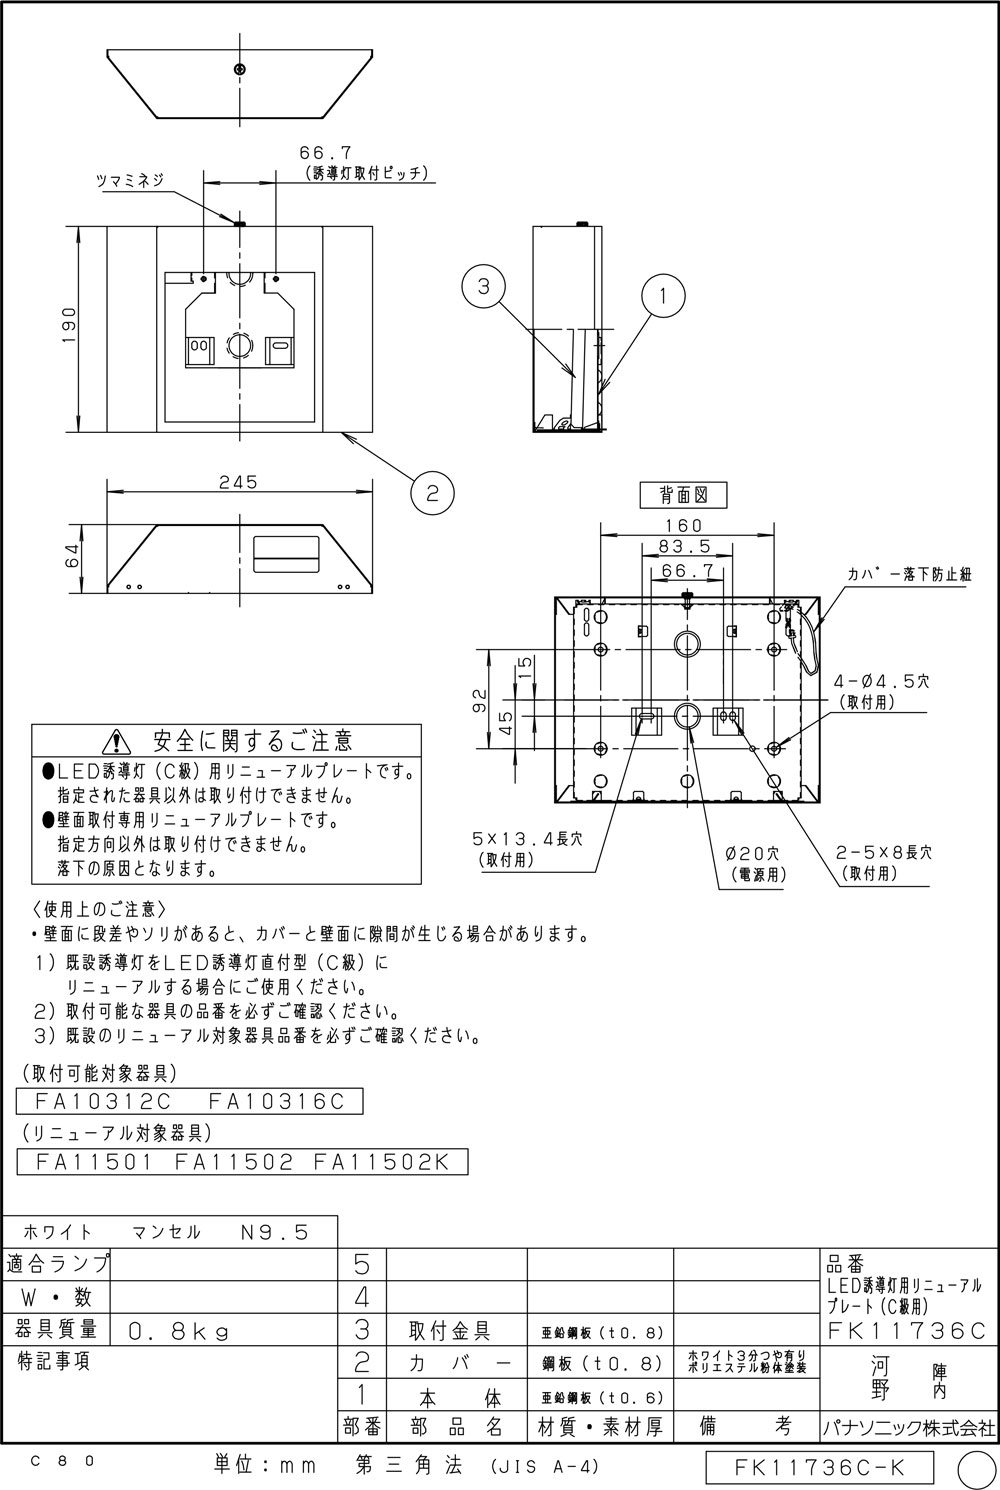 好評にて期間延長】 Panasonic製 誘導灯 FA10312c 5台 パネル付